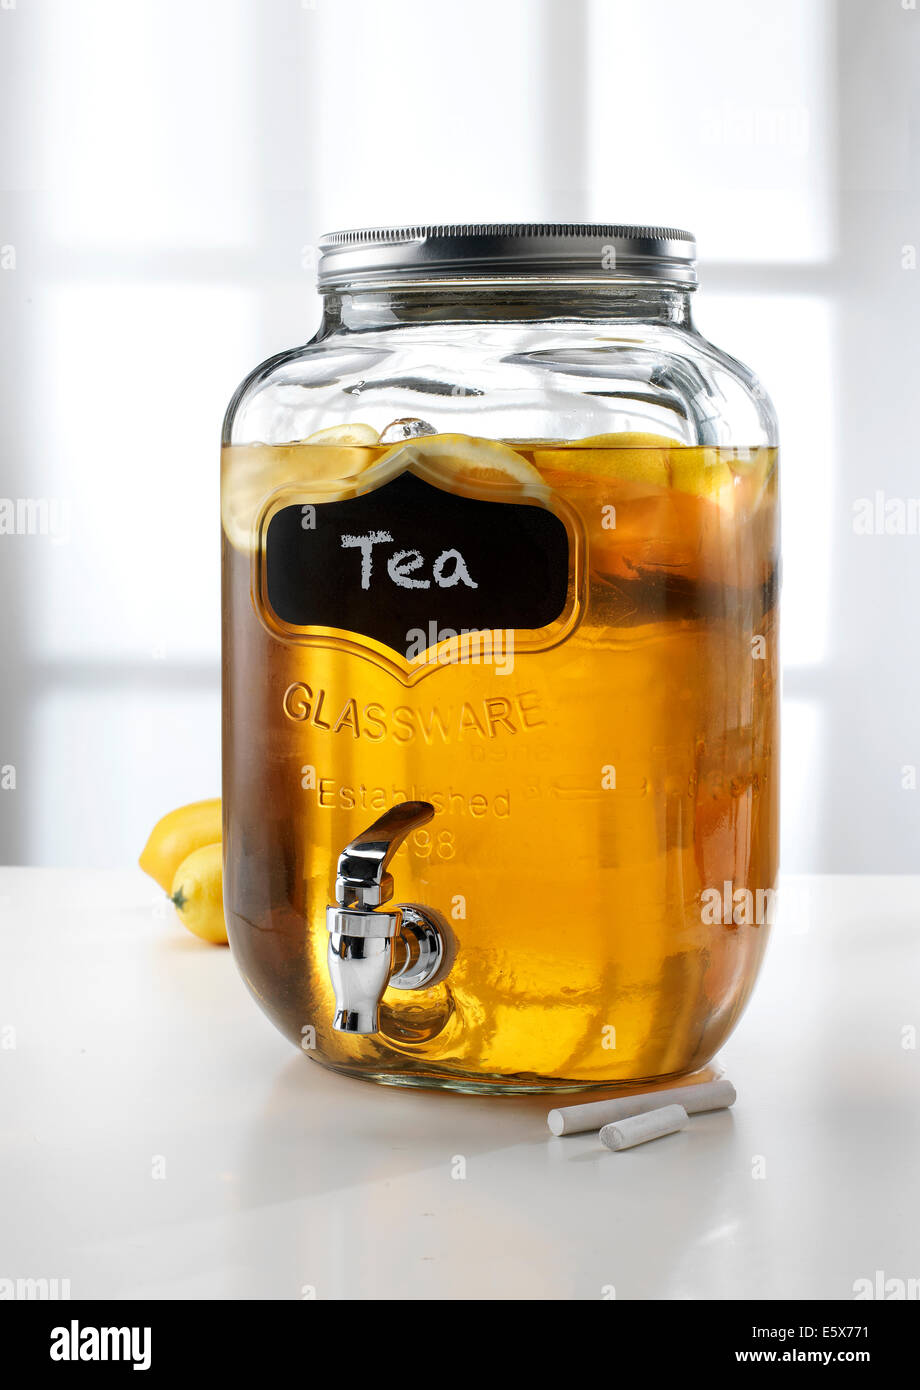 https://c8.alamy.com/comp/E5X771/glass-jar-with-tap-dispenser-containing-fresh-lemon-tea-drink-E5X771.jpg